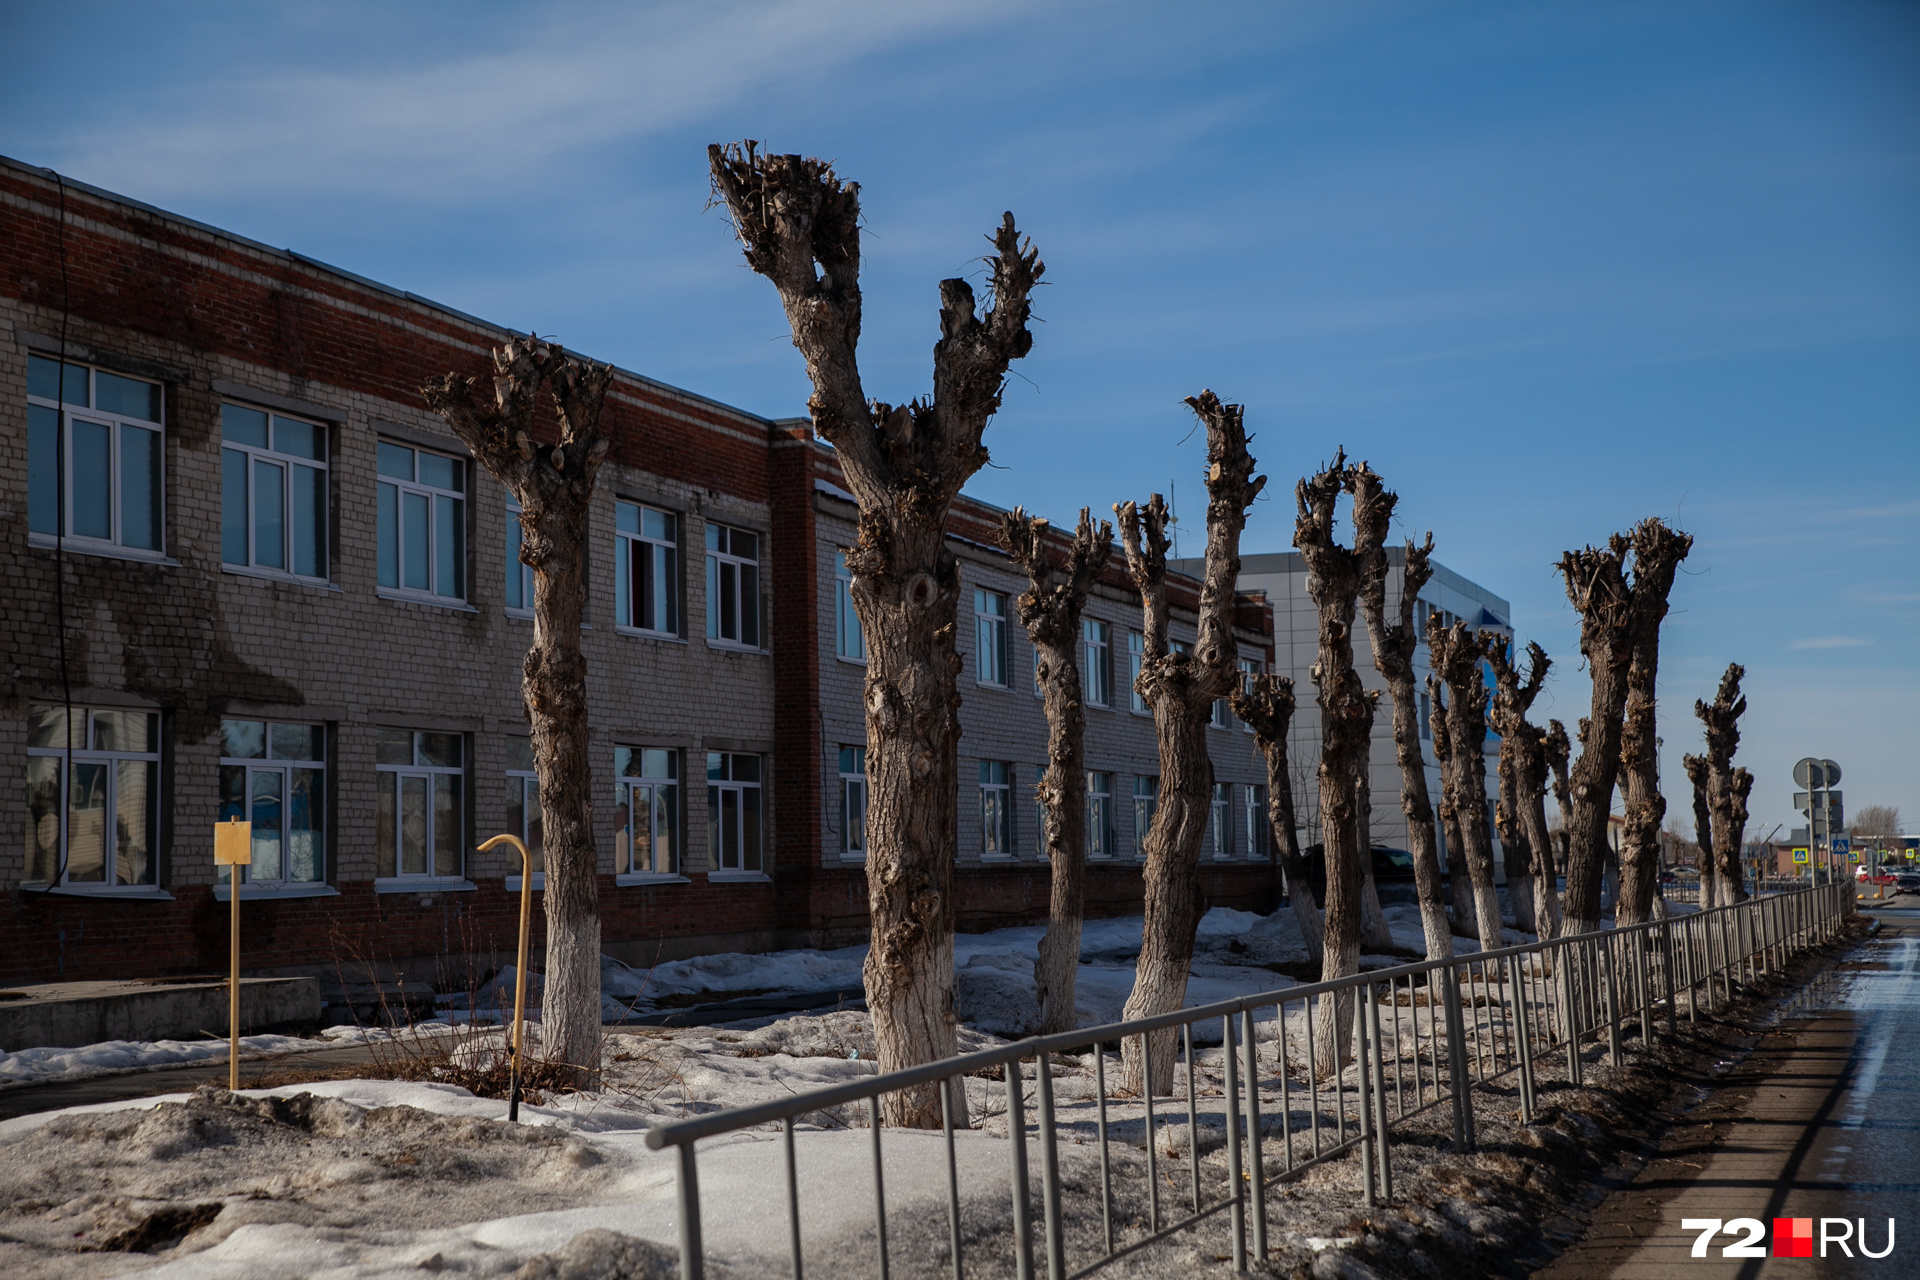 Оставленные без веток деревья слабеют, пытаясь восстановить свой покров к зиме